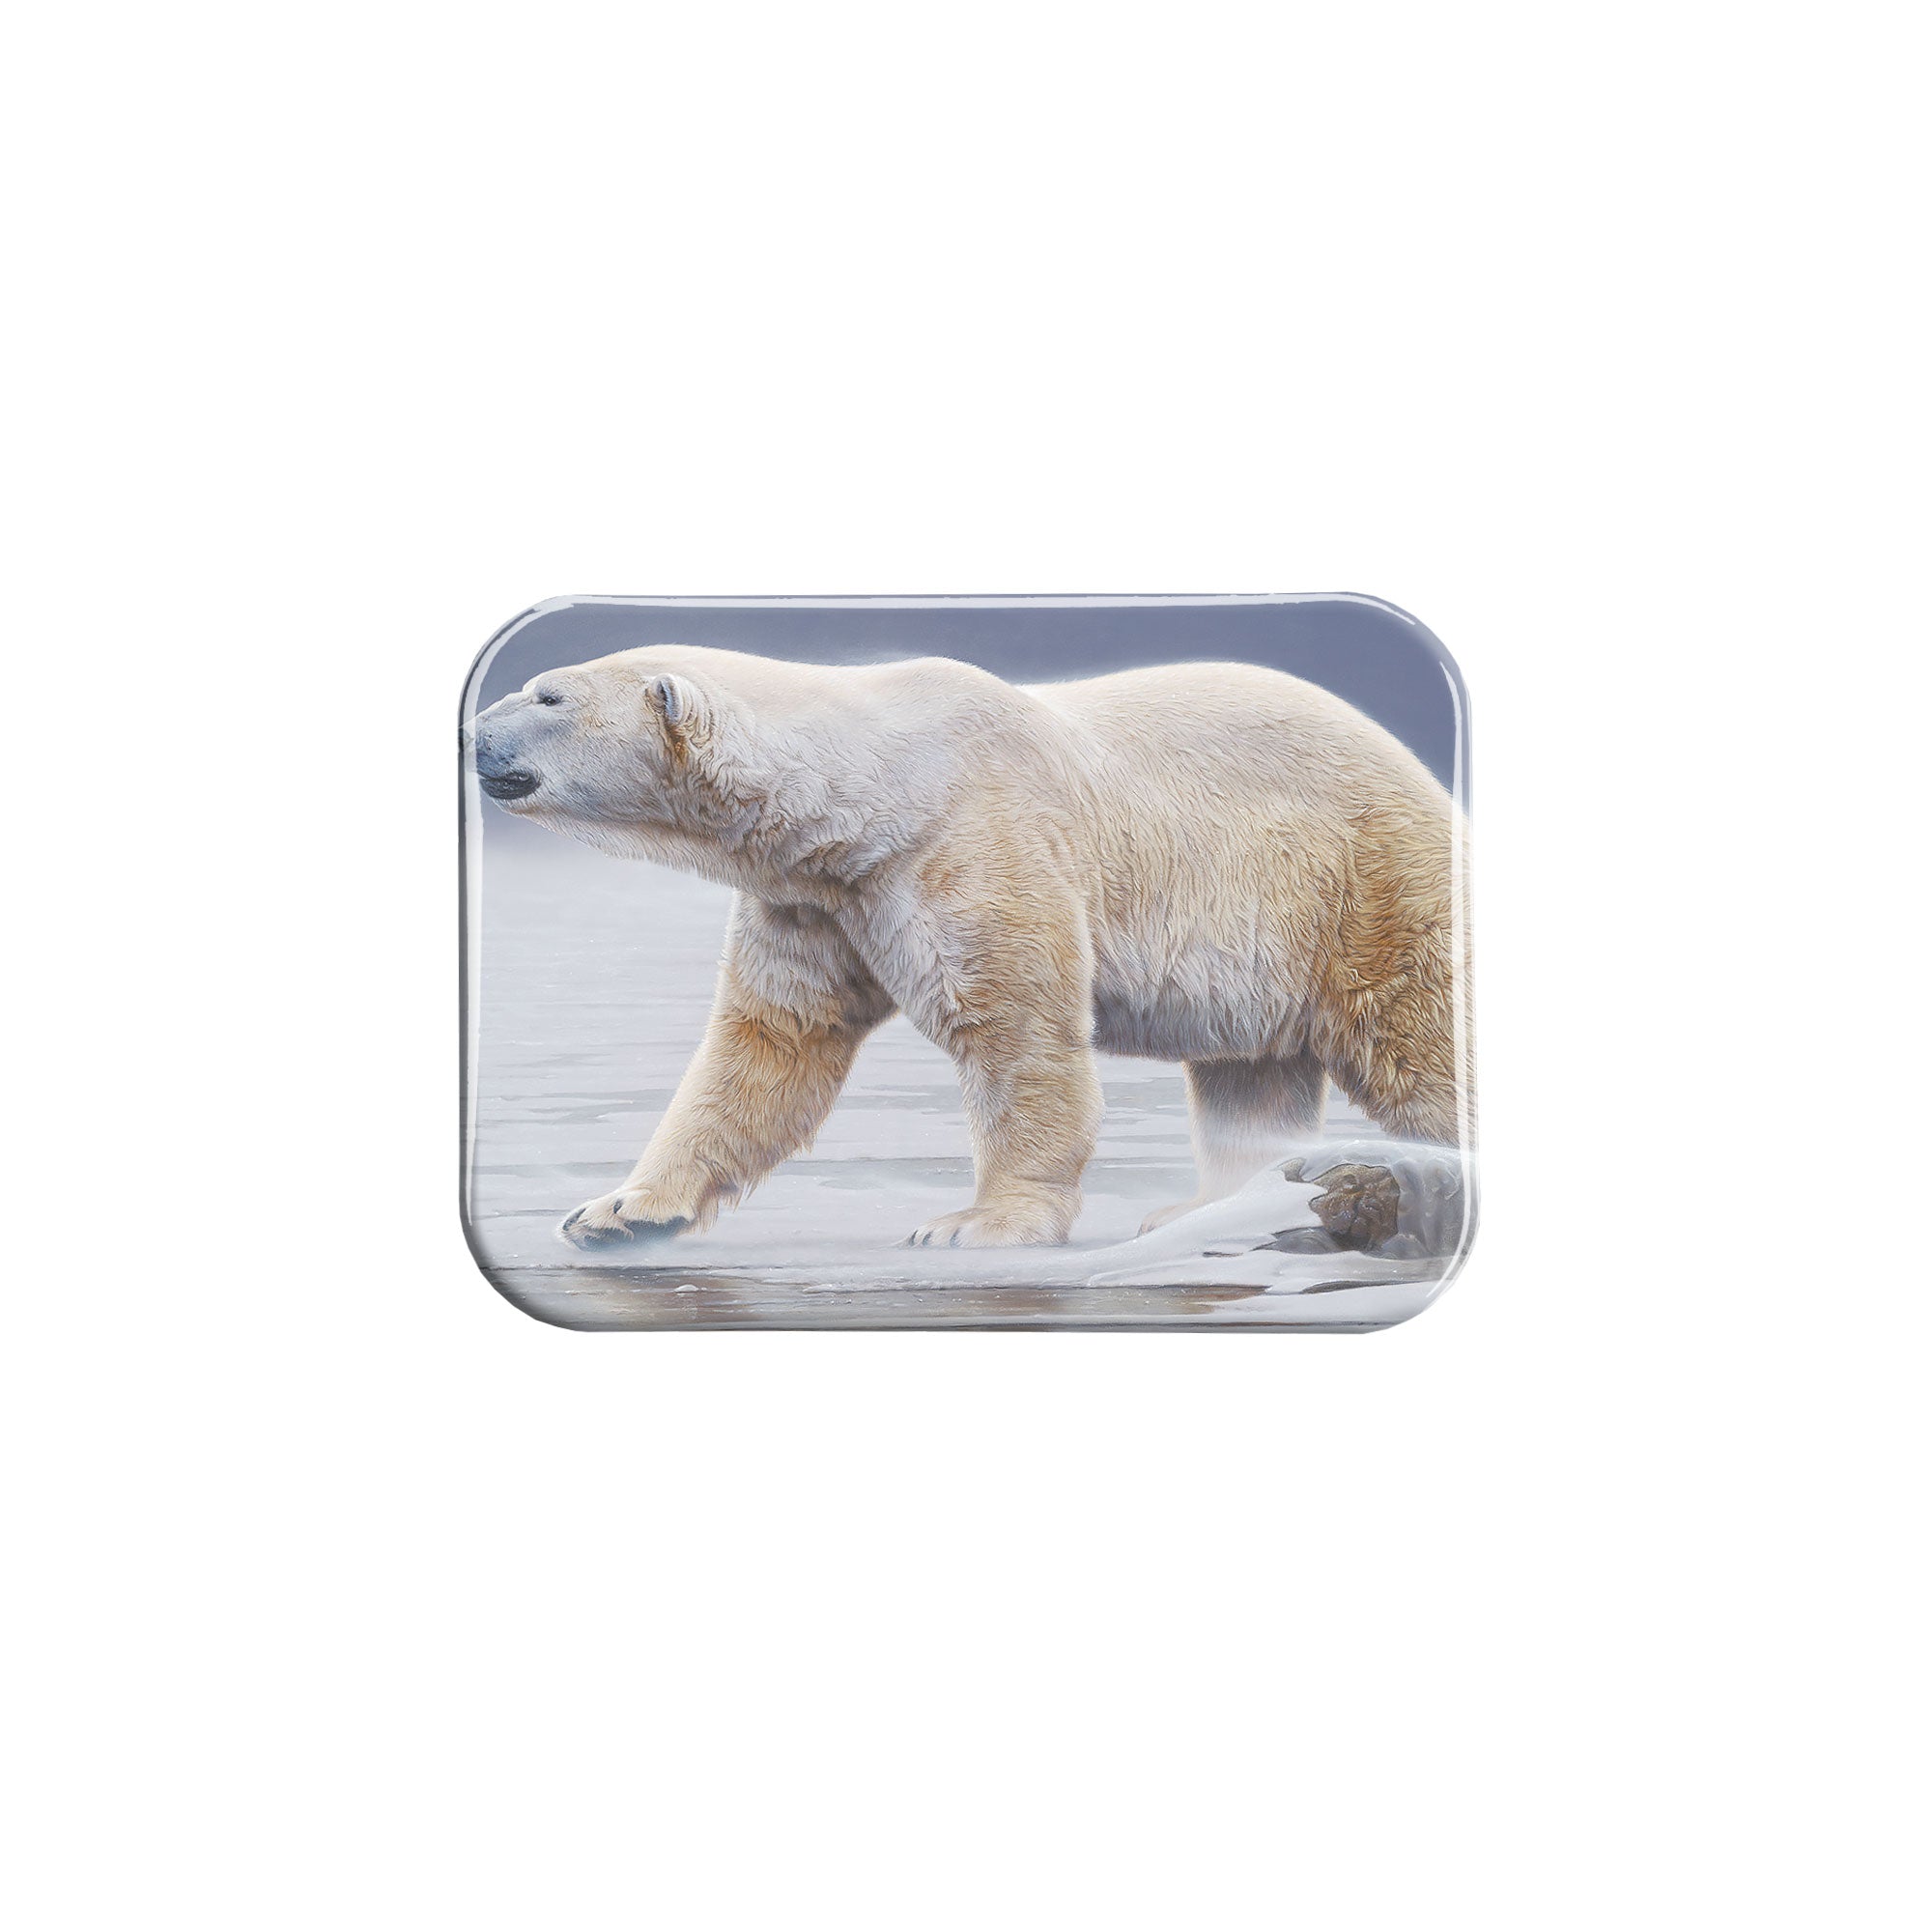 "Arctic Icon" - 2.5" X 3.5" Rectangle Fridge Magnets